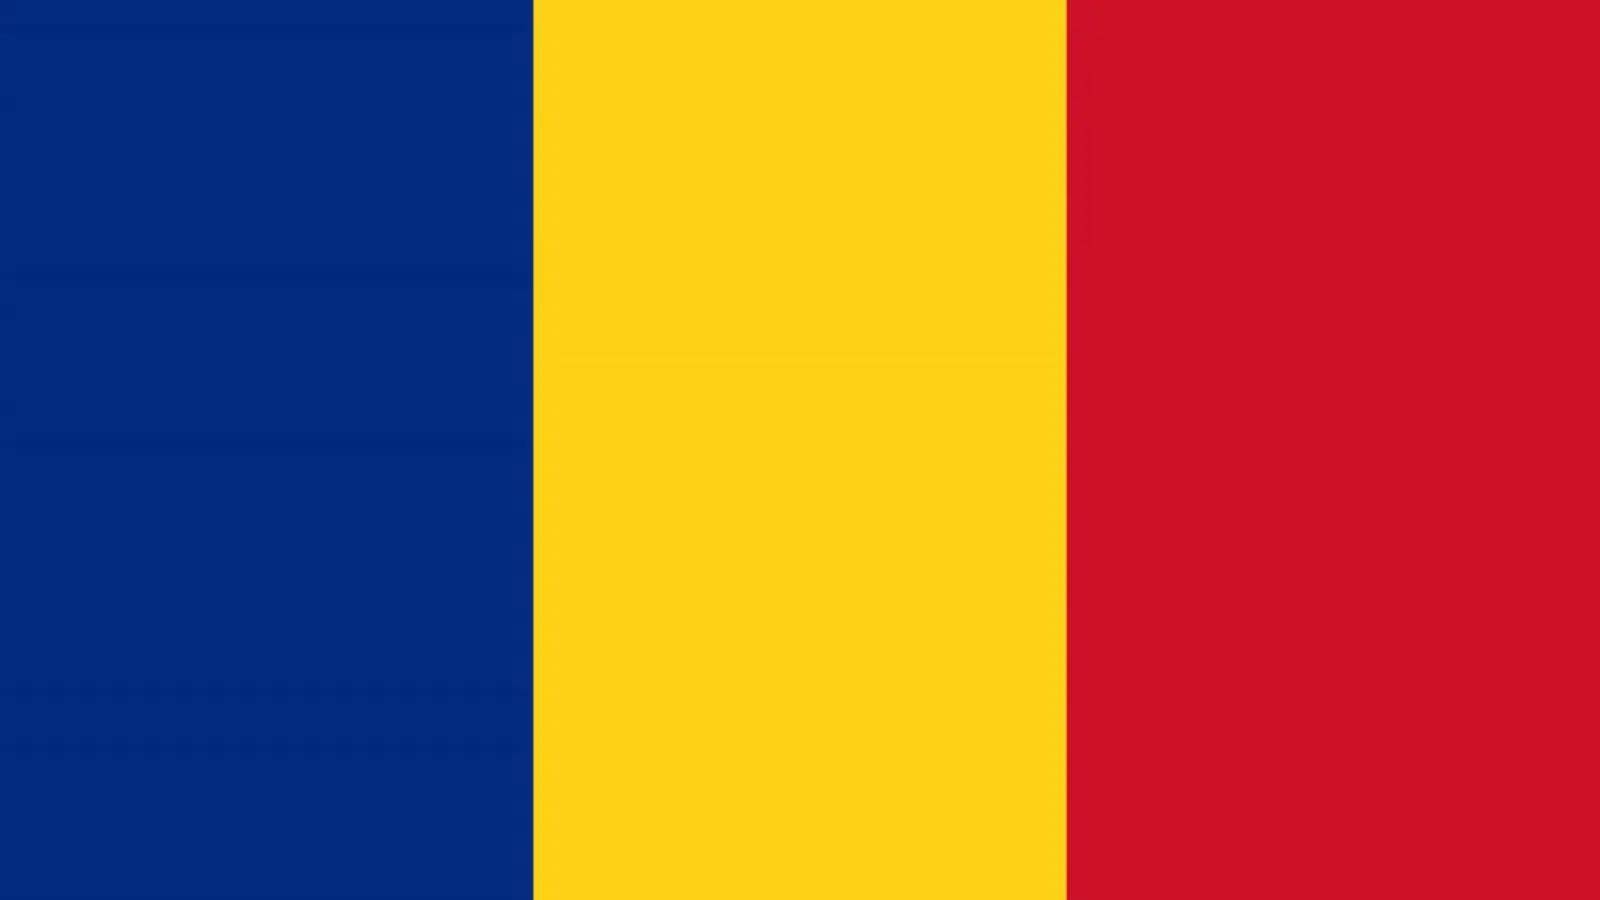 DSU Roumanie Des mesures IMPORTANTES annoncées au pays des Roumains